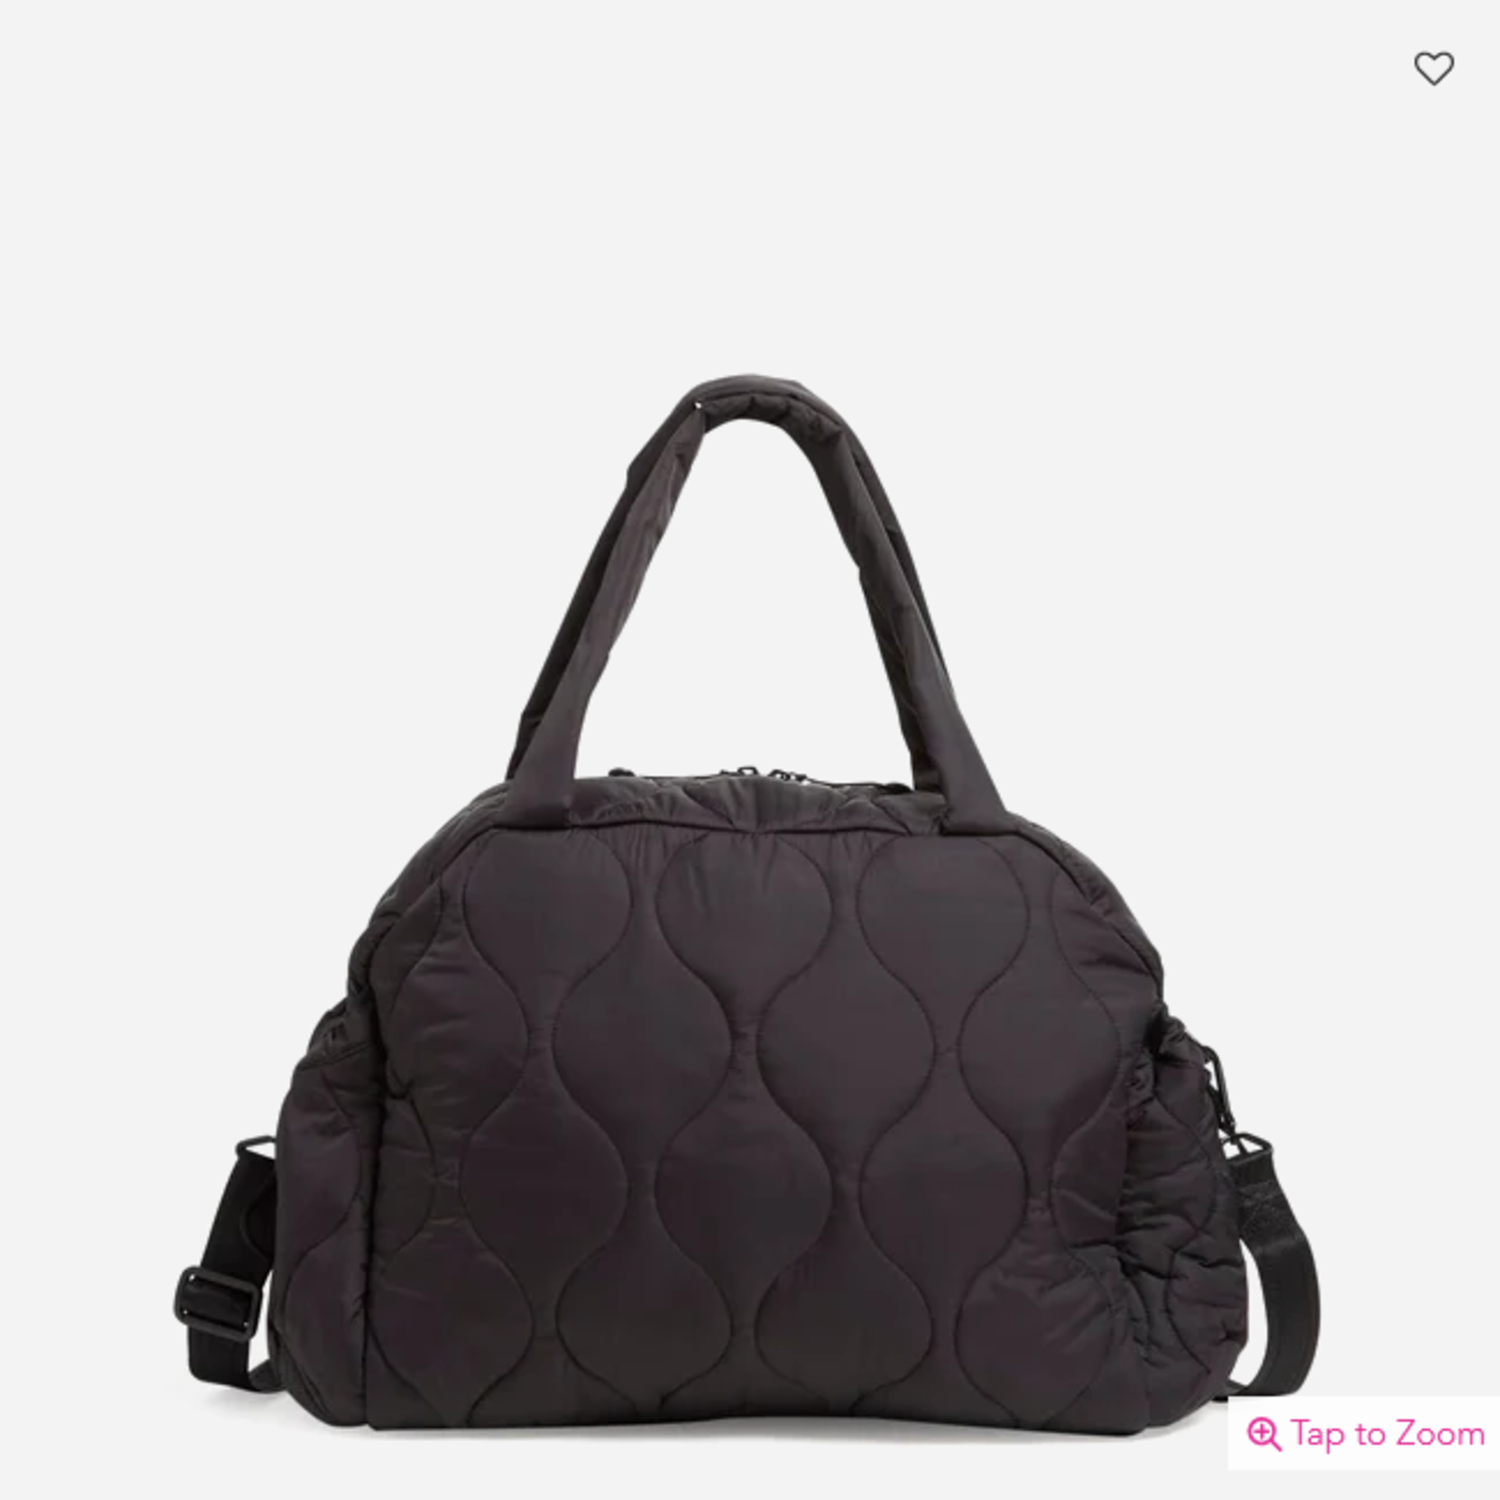 Designer VERA BRADLEY Black Purse Quilted Shoulder Bag 8 X 12